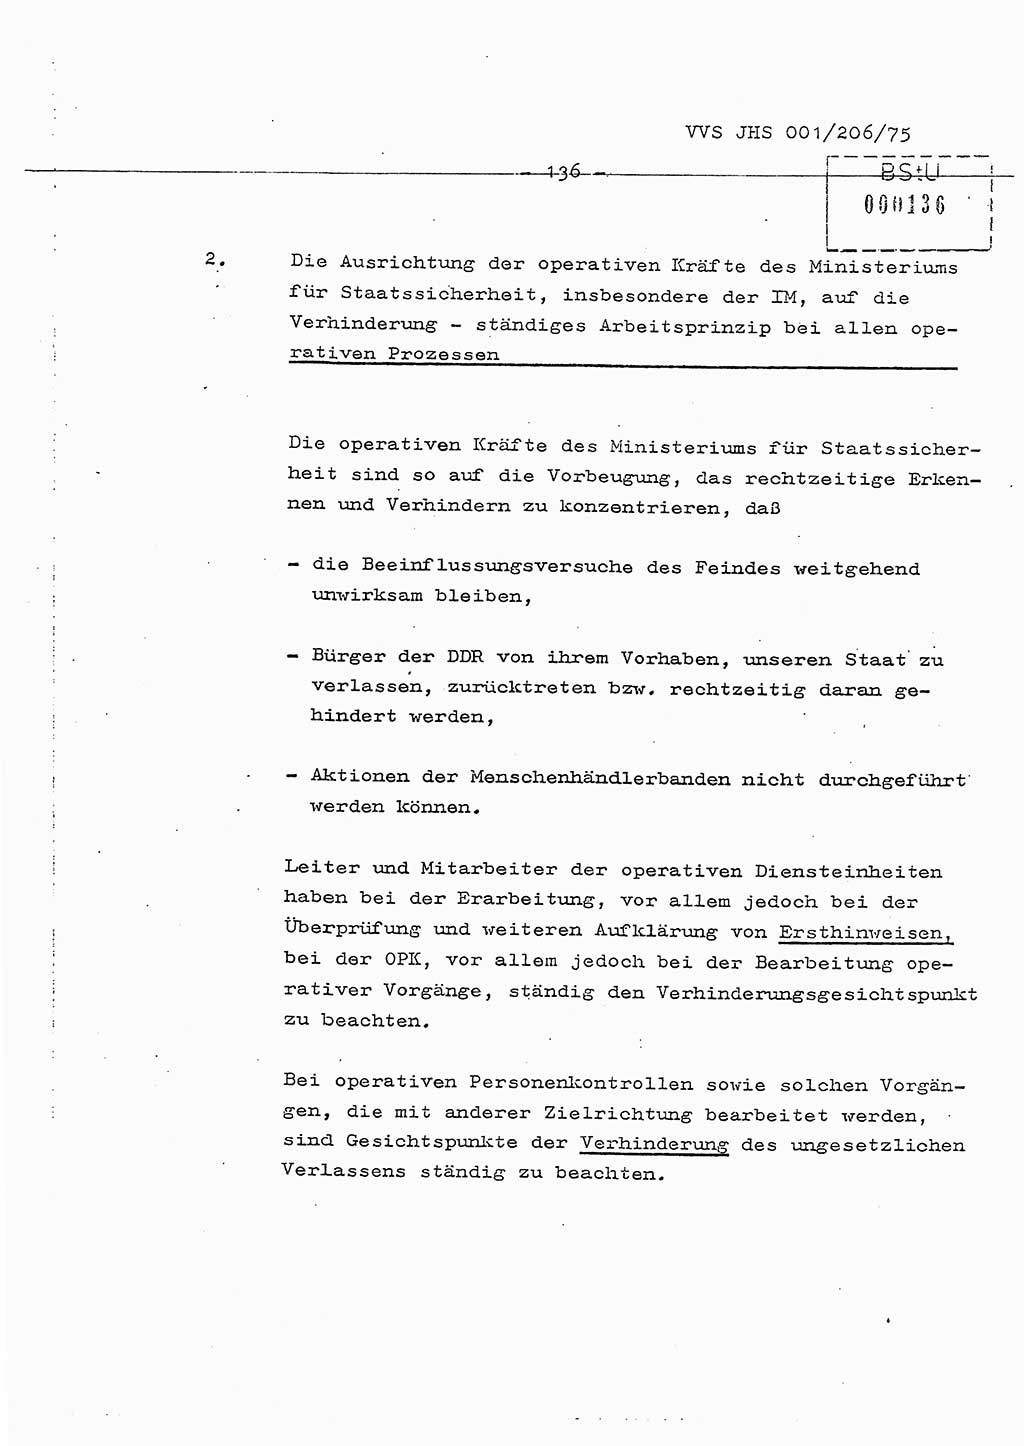 Dissertation Generalmajor Manfred Hummitzsch (Leiter der BV Leipzig), Generalmajor Heinz Fiedler (HA Ⅵ), Oberst Rolf Fister (HA Ⅸ), Ministerium für Staatssicherheit (MfS) [Deutsche Demokratische Republik (DDR)], Juristische Hochschule (JHS), Vertrauliche Verschlußsache (VVS) 001-206/75, Potsdam 1975, Seite 136 (Diss. MfS DDR JHS VVS 001-206/75 1975, S. 136)